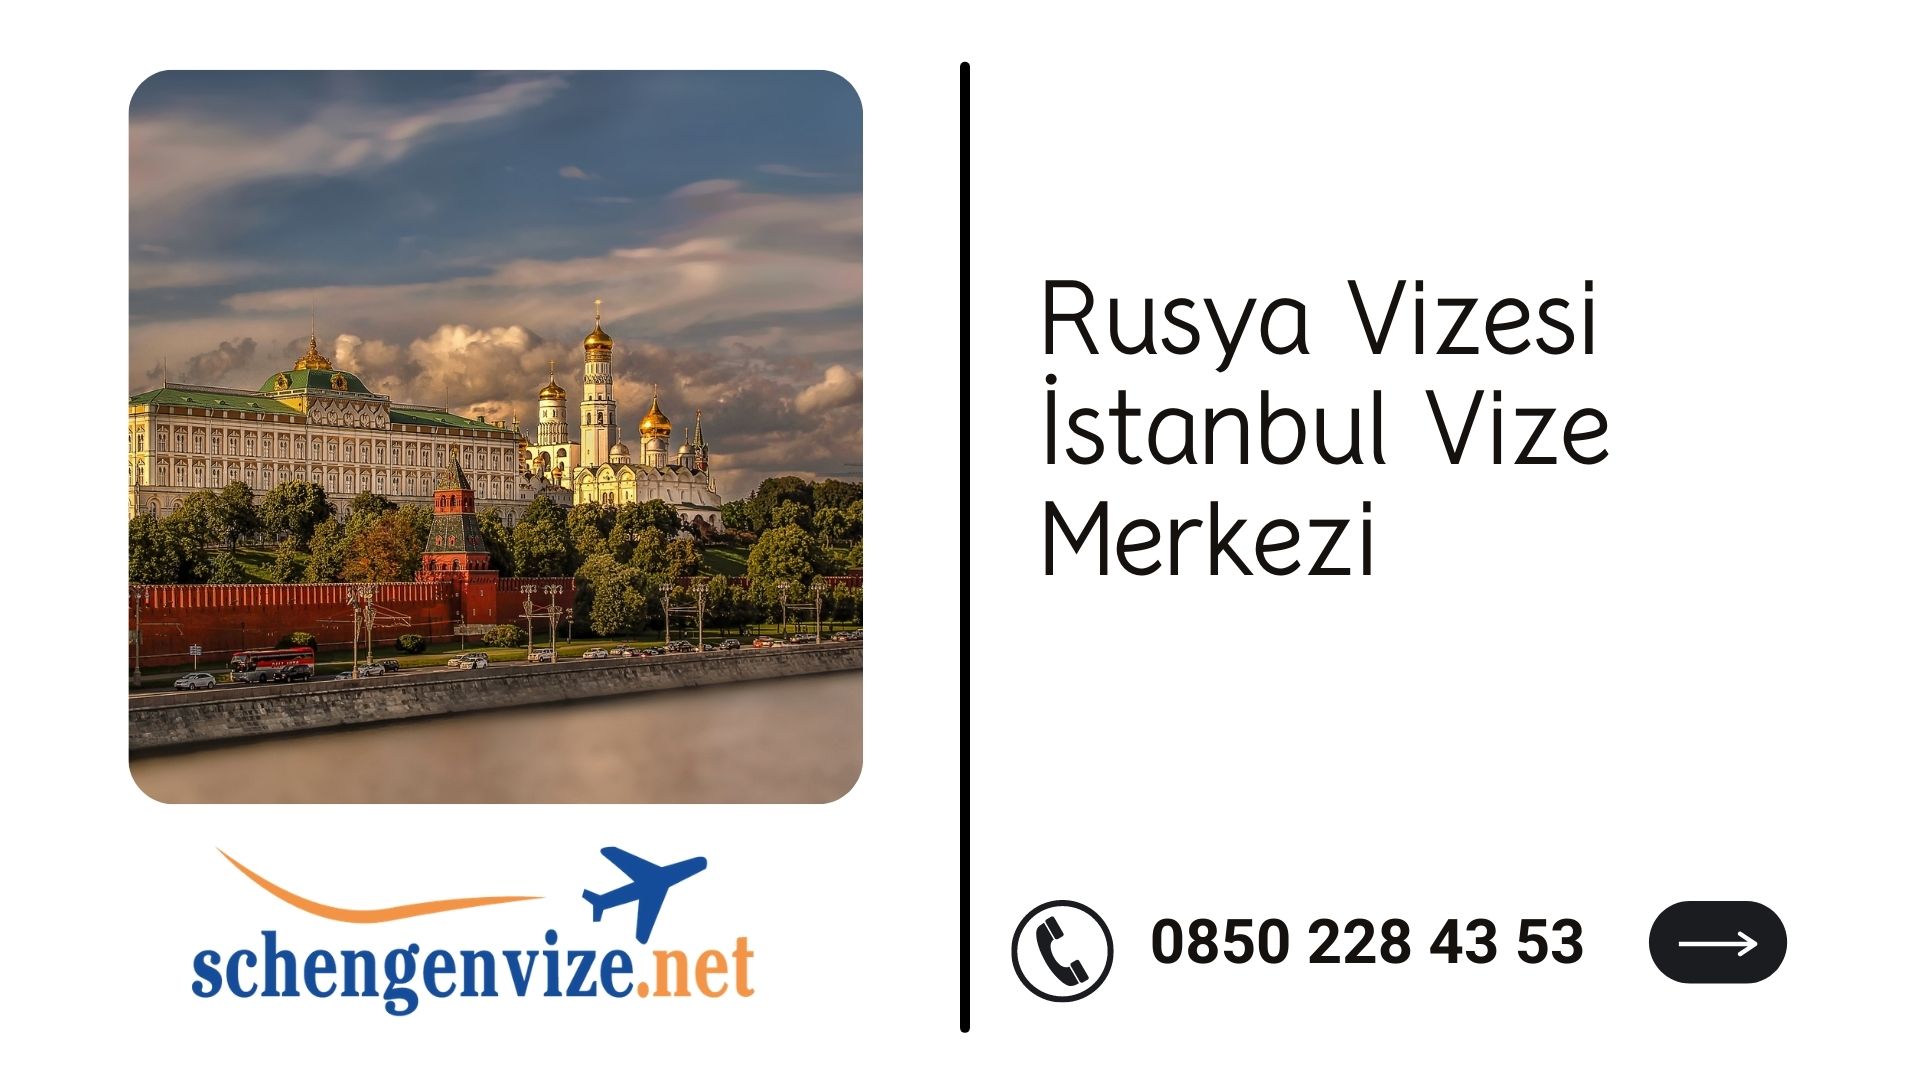 Rusya Vizesi İstanbul Vize Merkezi